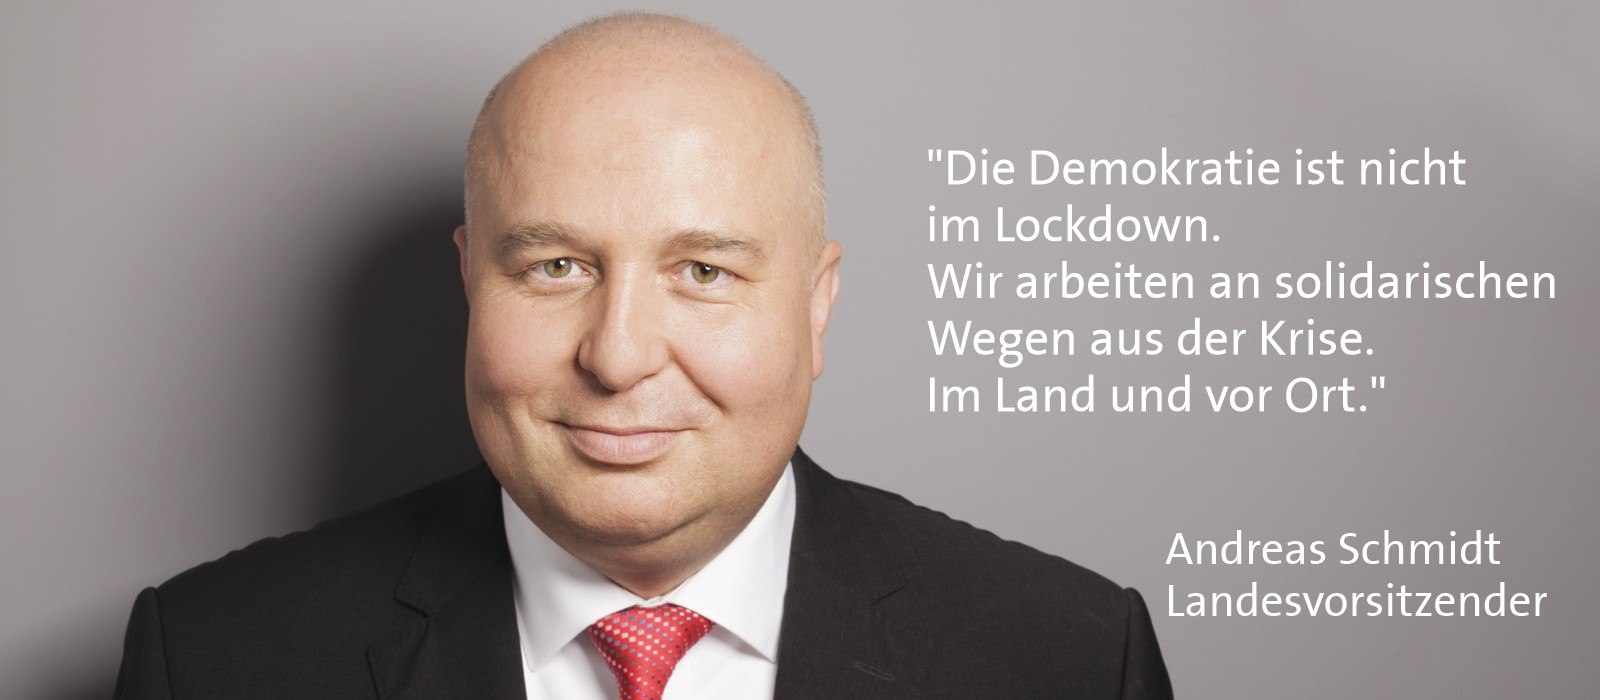 Andreas Schmidt, Landesvorsitzender - Die Demokratie ist nicht im Lockdown.